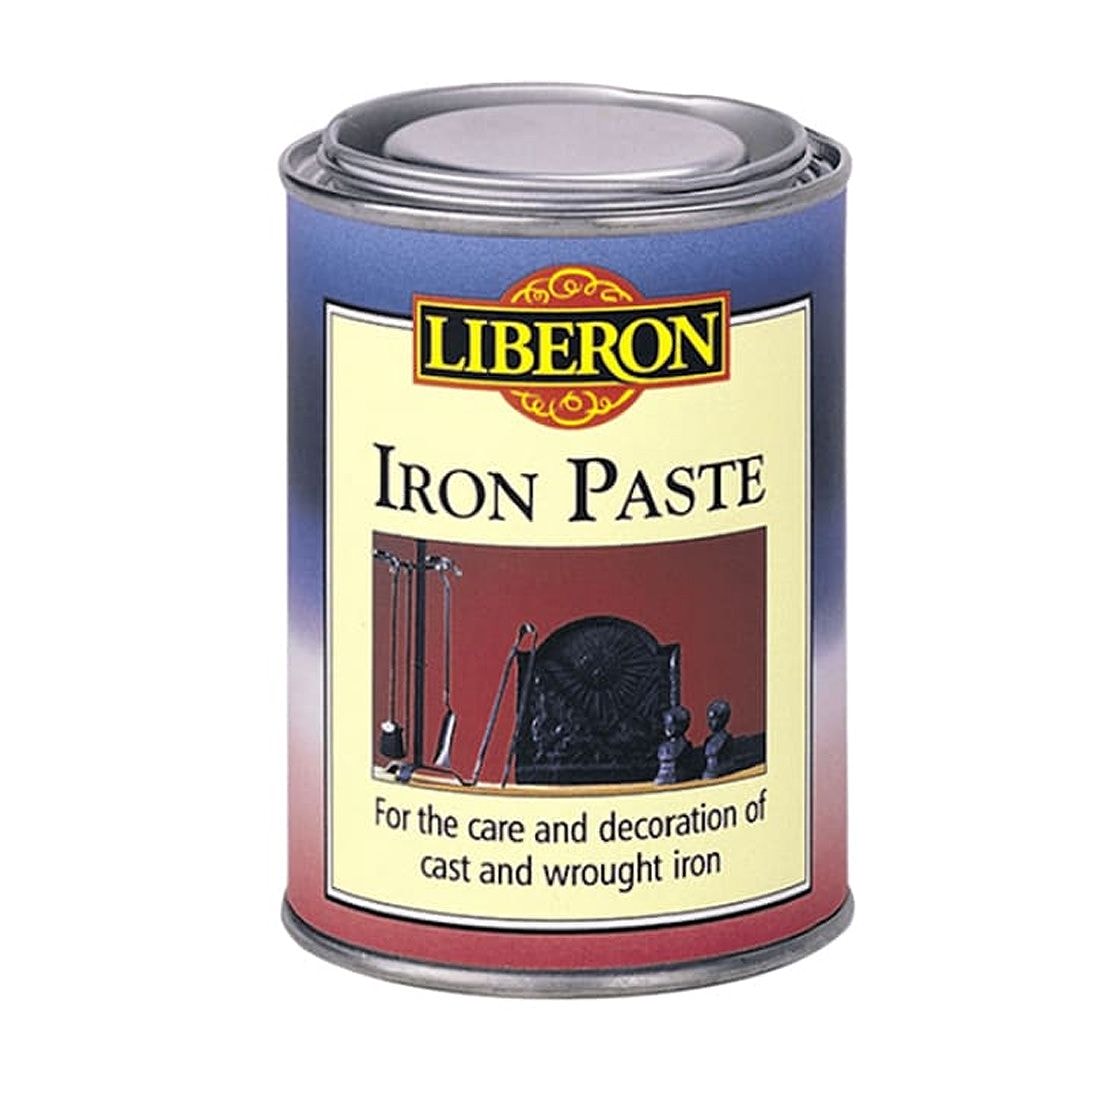 Liberon Iron Paste 1ltr